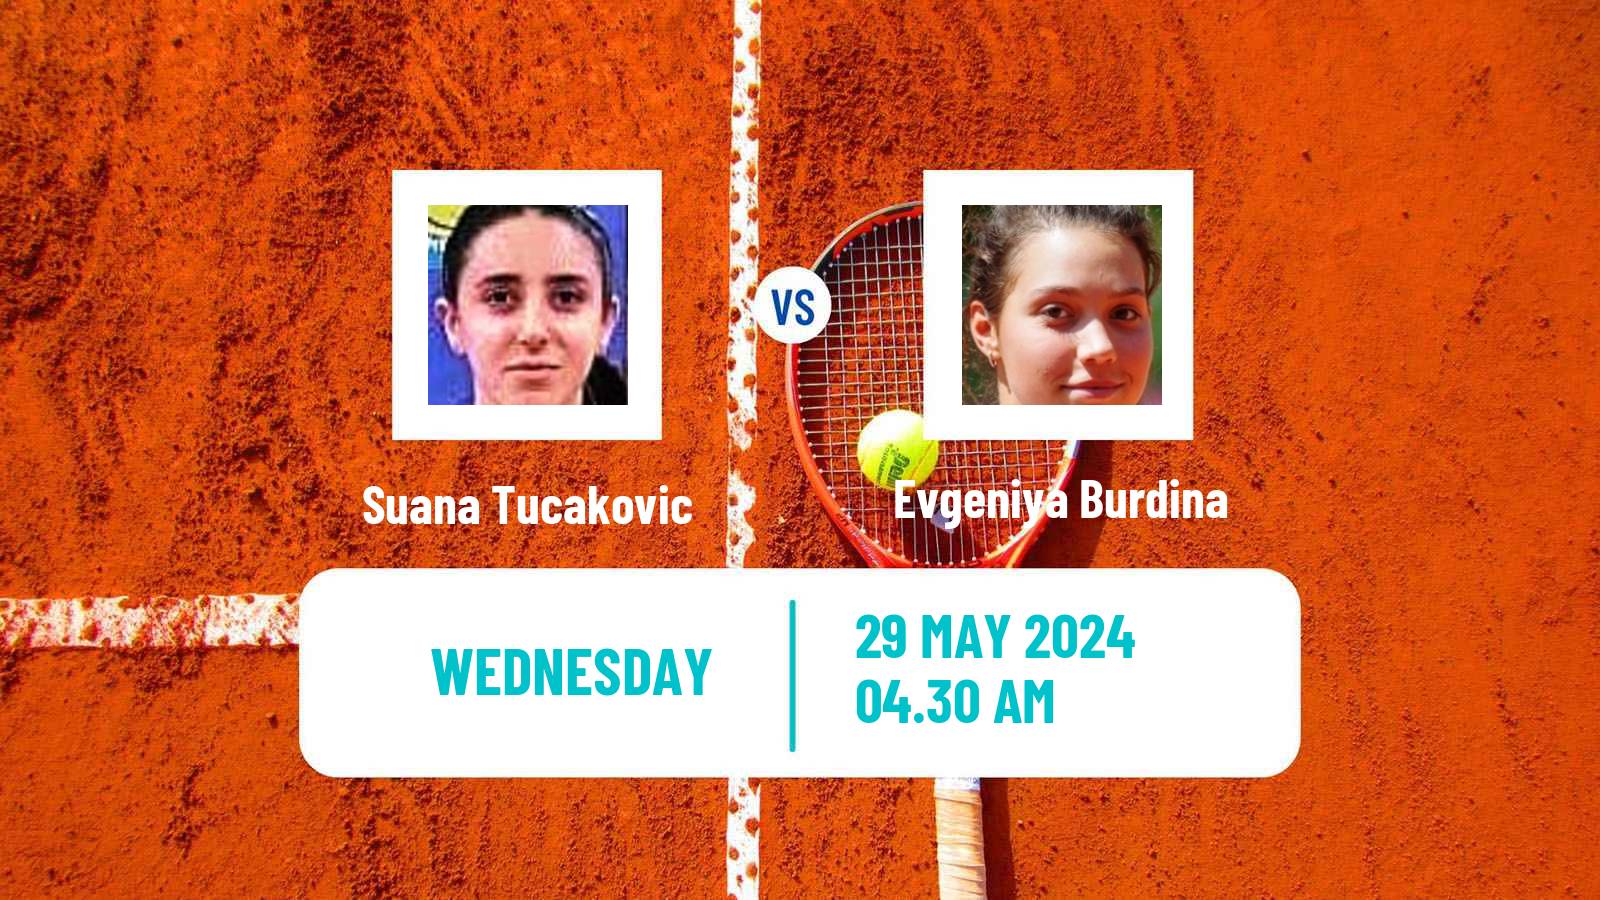 Tennis ITF W15 Kursumlijska Banja 6 Women Suana Tucakovic - Evgeniya Burdina